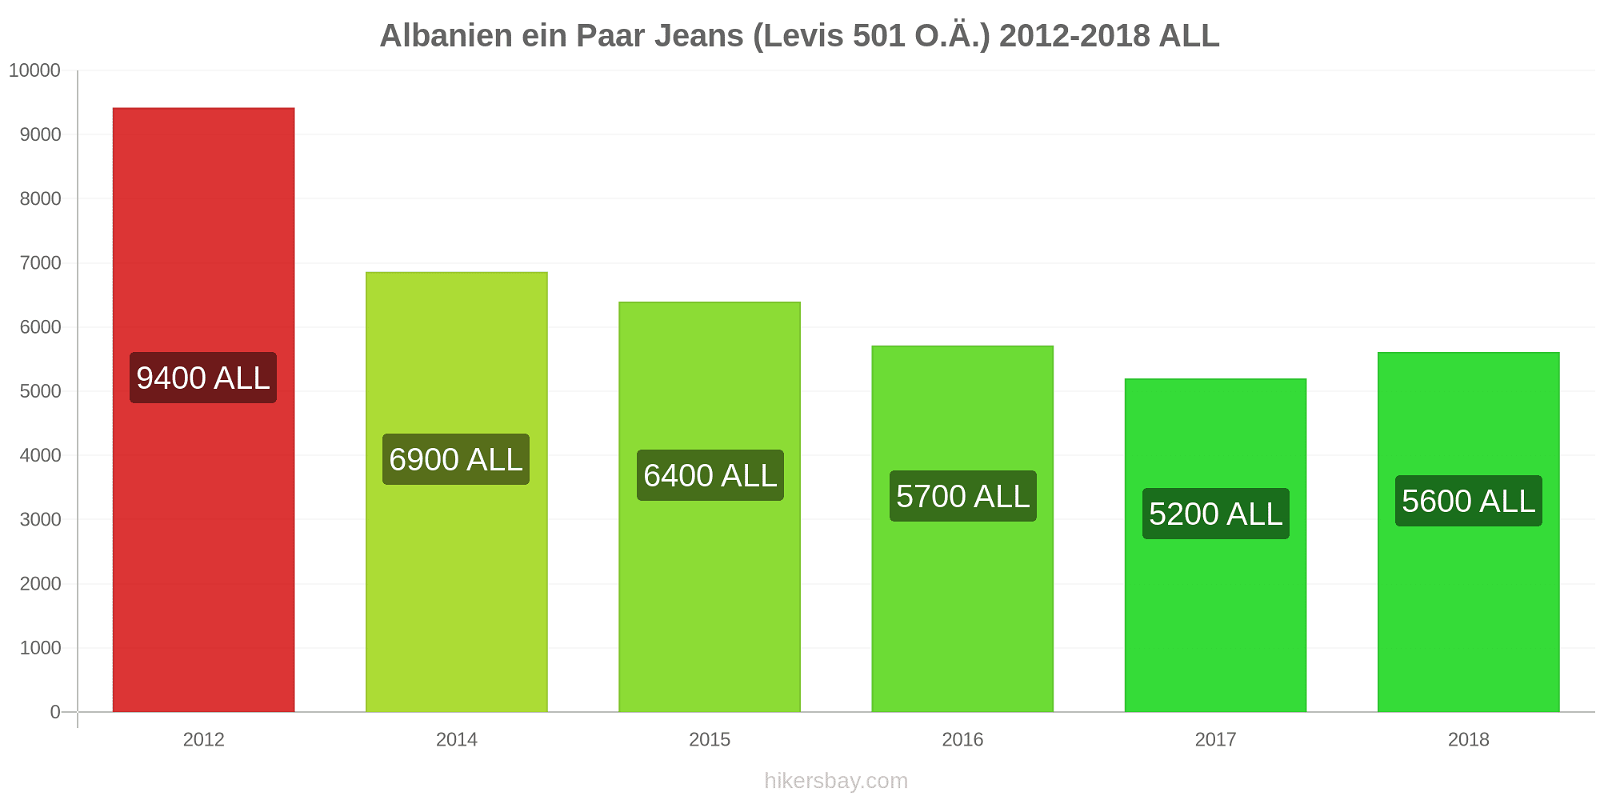 Albanien Preisänderungen 1 Paar Jeans (Levis 501 oder ähnlich) hikersbay.com